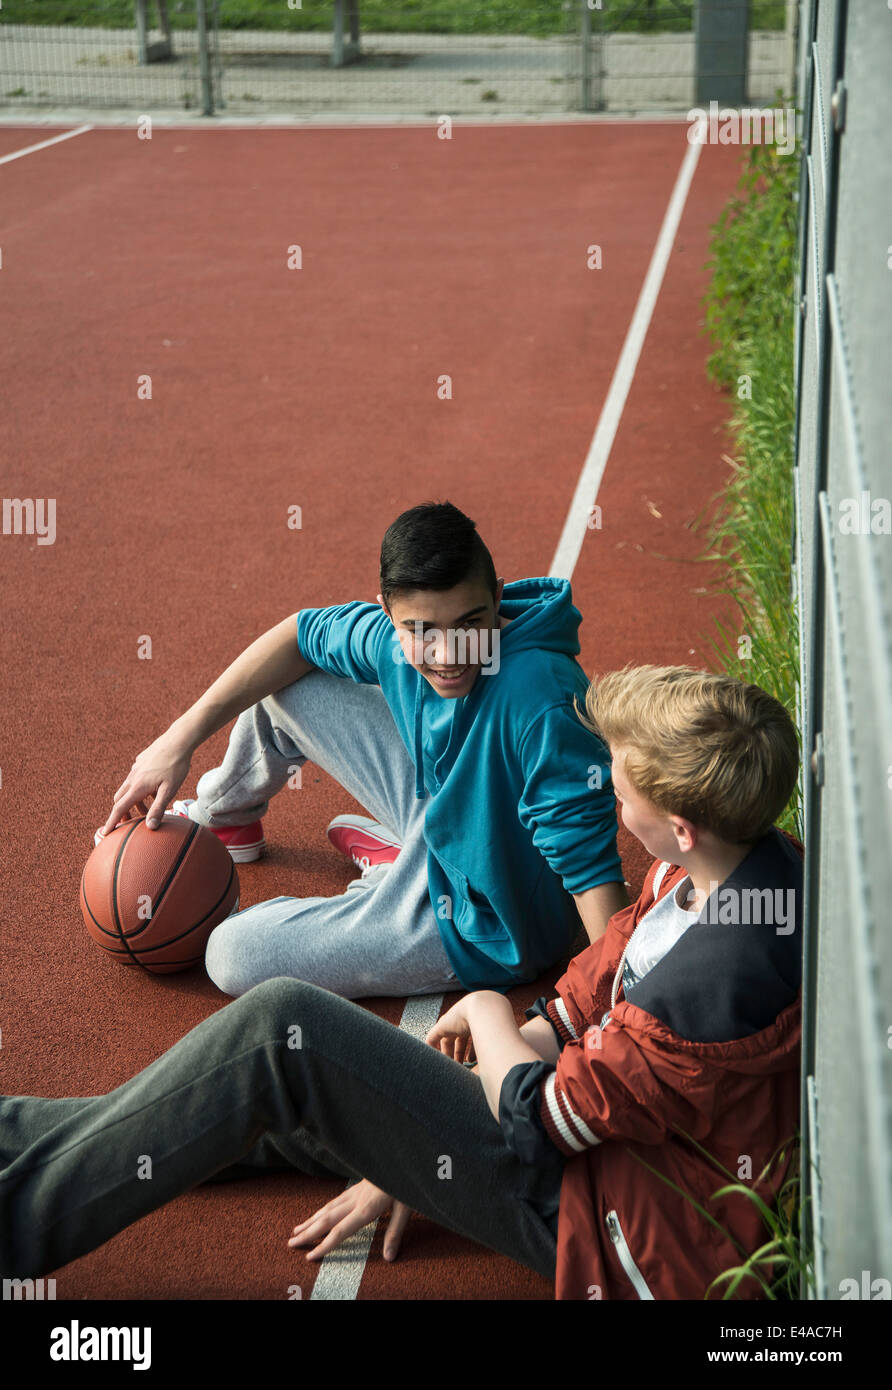 Deux garçons de basket-ball avec leanaing contre fence Banque D'Images